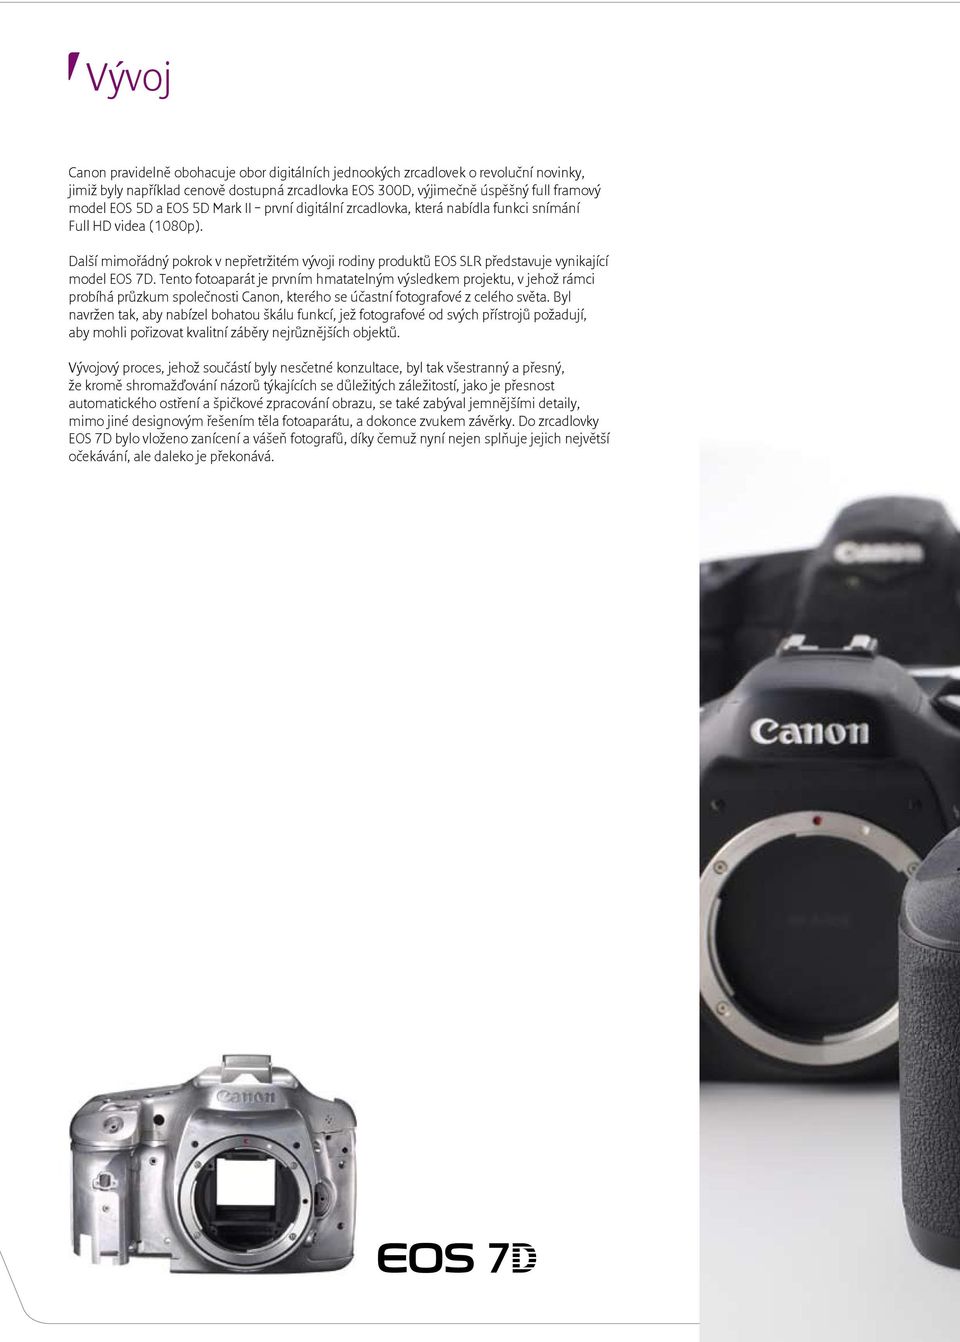 Tento fotoaparát je prvním hmatatelným výsledkem projektu, v jehož rámci probíhá průzkum společnosti Canon, kterého se účastní fotografové z celého světa.